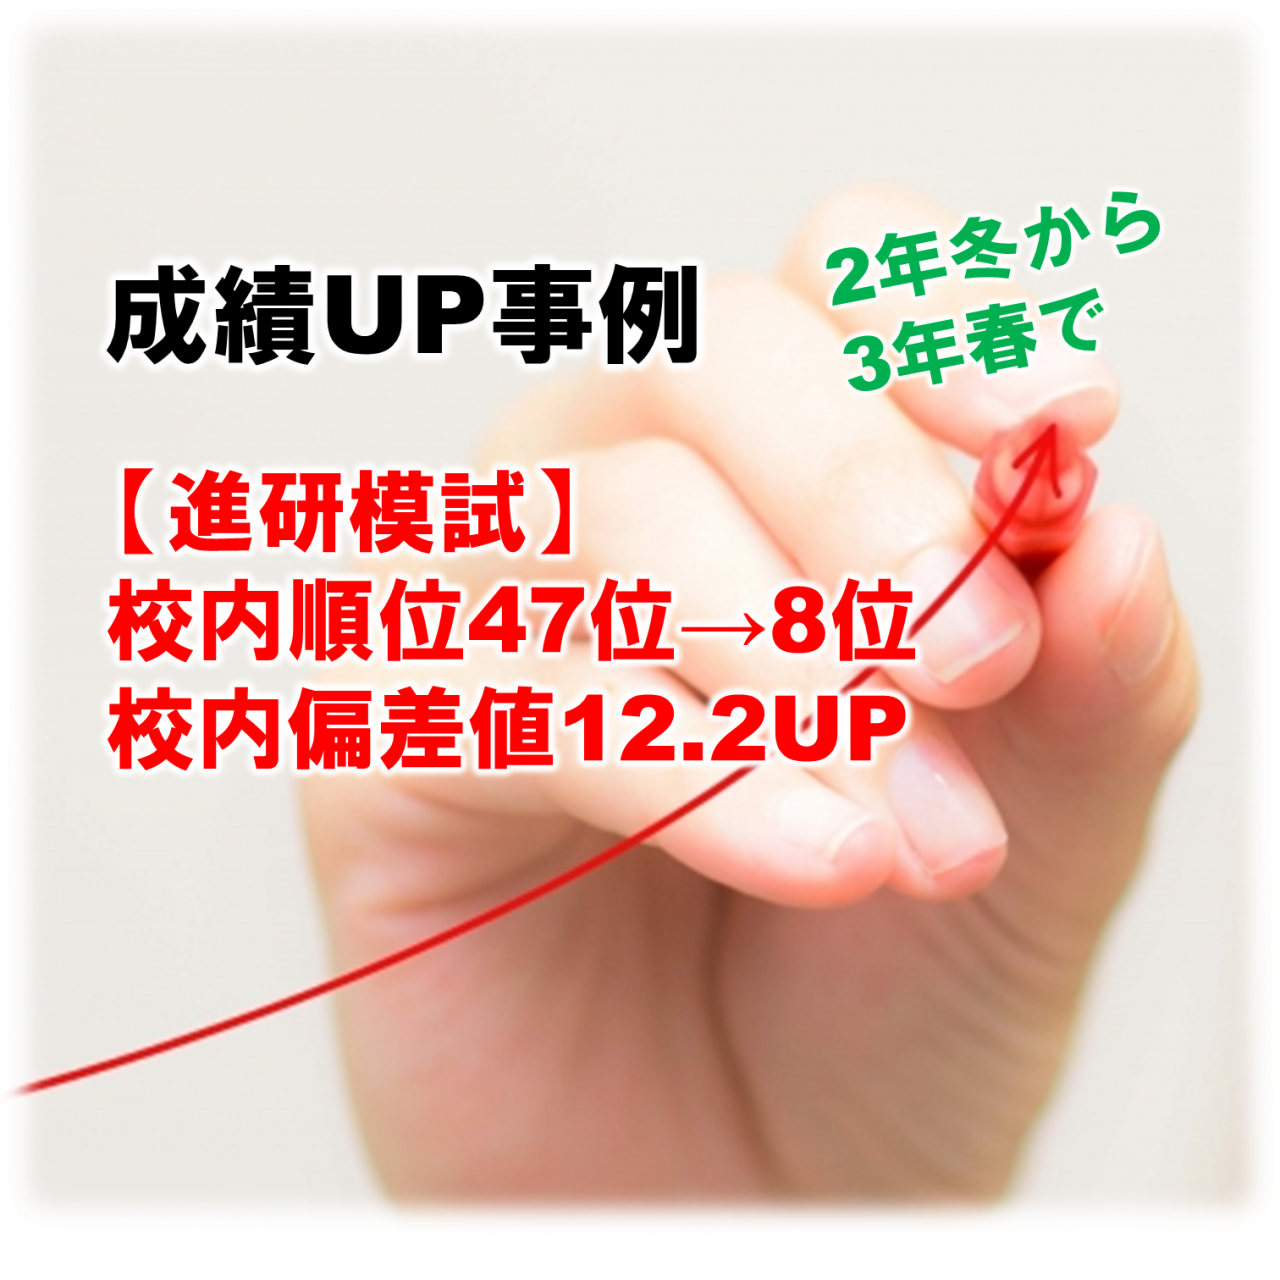 【進研模試】冬→春で校内偏差値12.2UP！偏差値60台に！